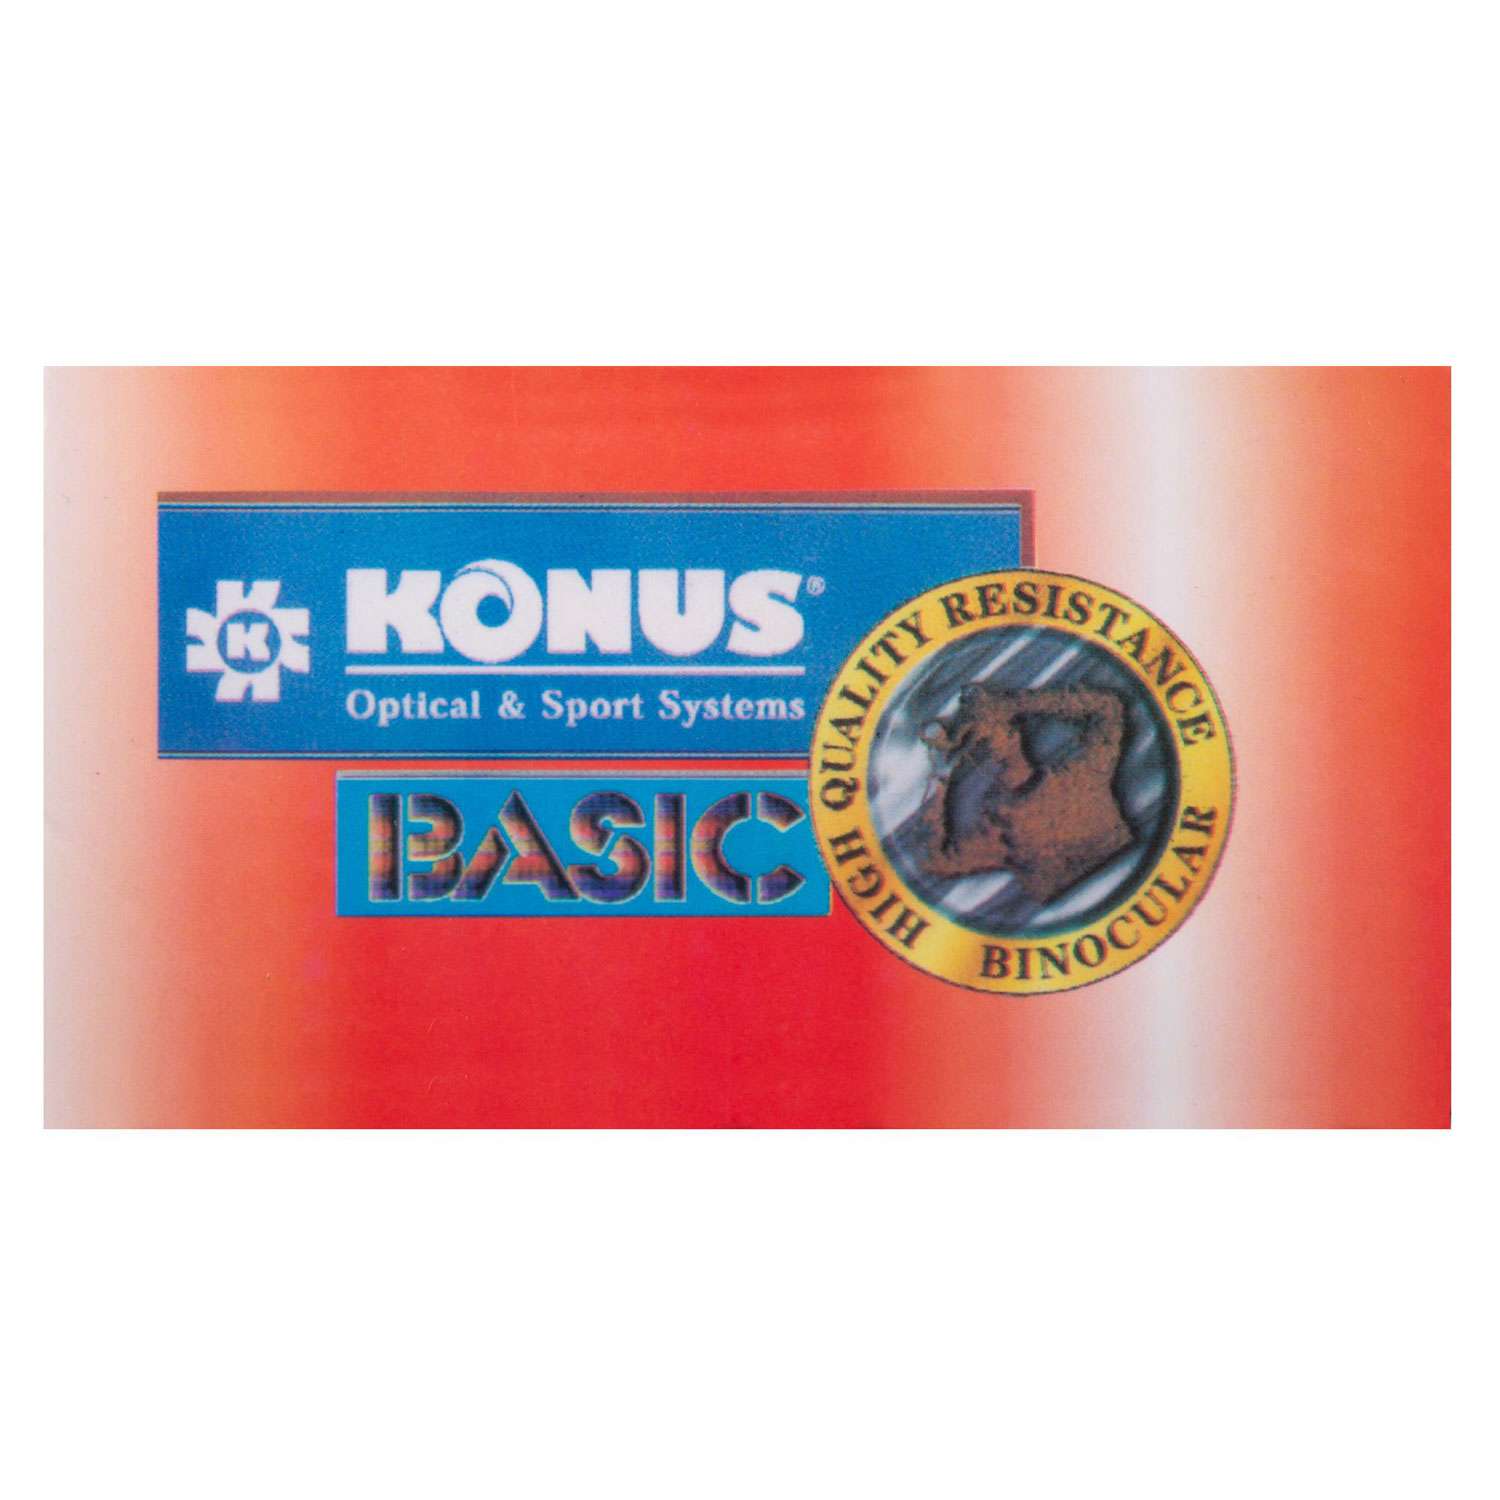 Бинокль Konus Basic 12x32 - фото 16